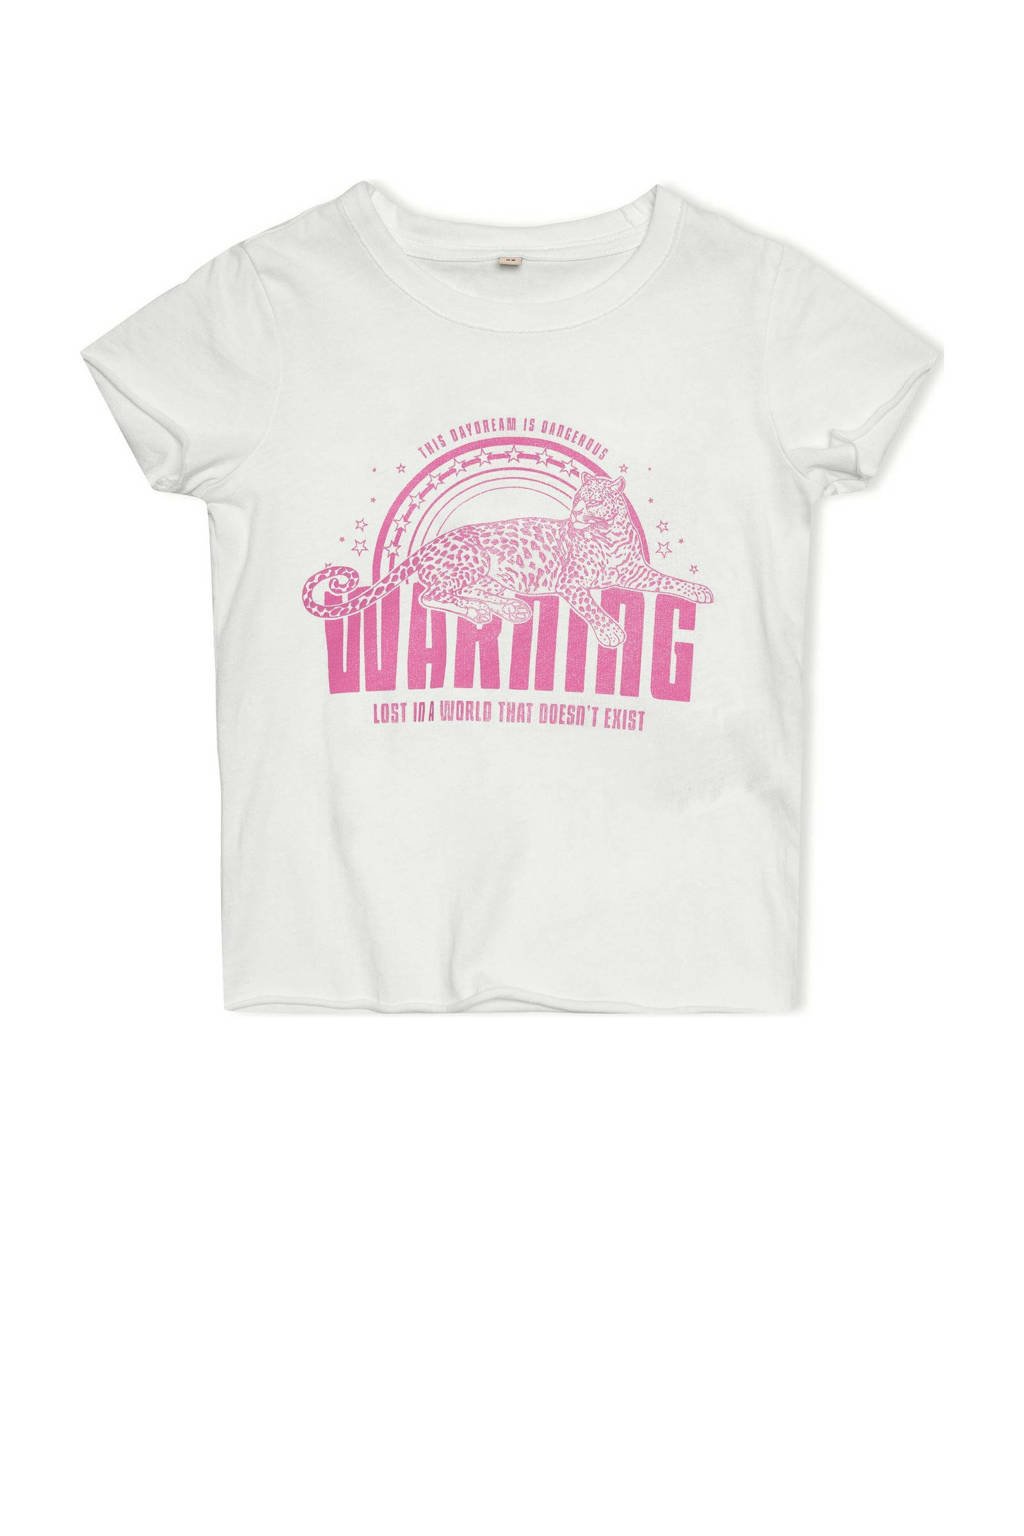 Wit en roze meisjes KIDS ONLY MINI T-shirt van katoen met printopdruk, korte mouwen en ronde hals